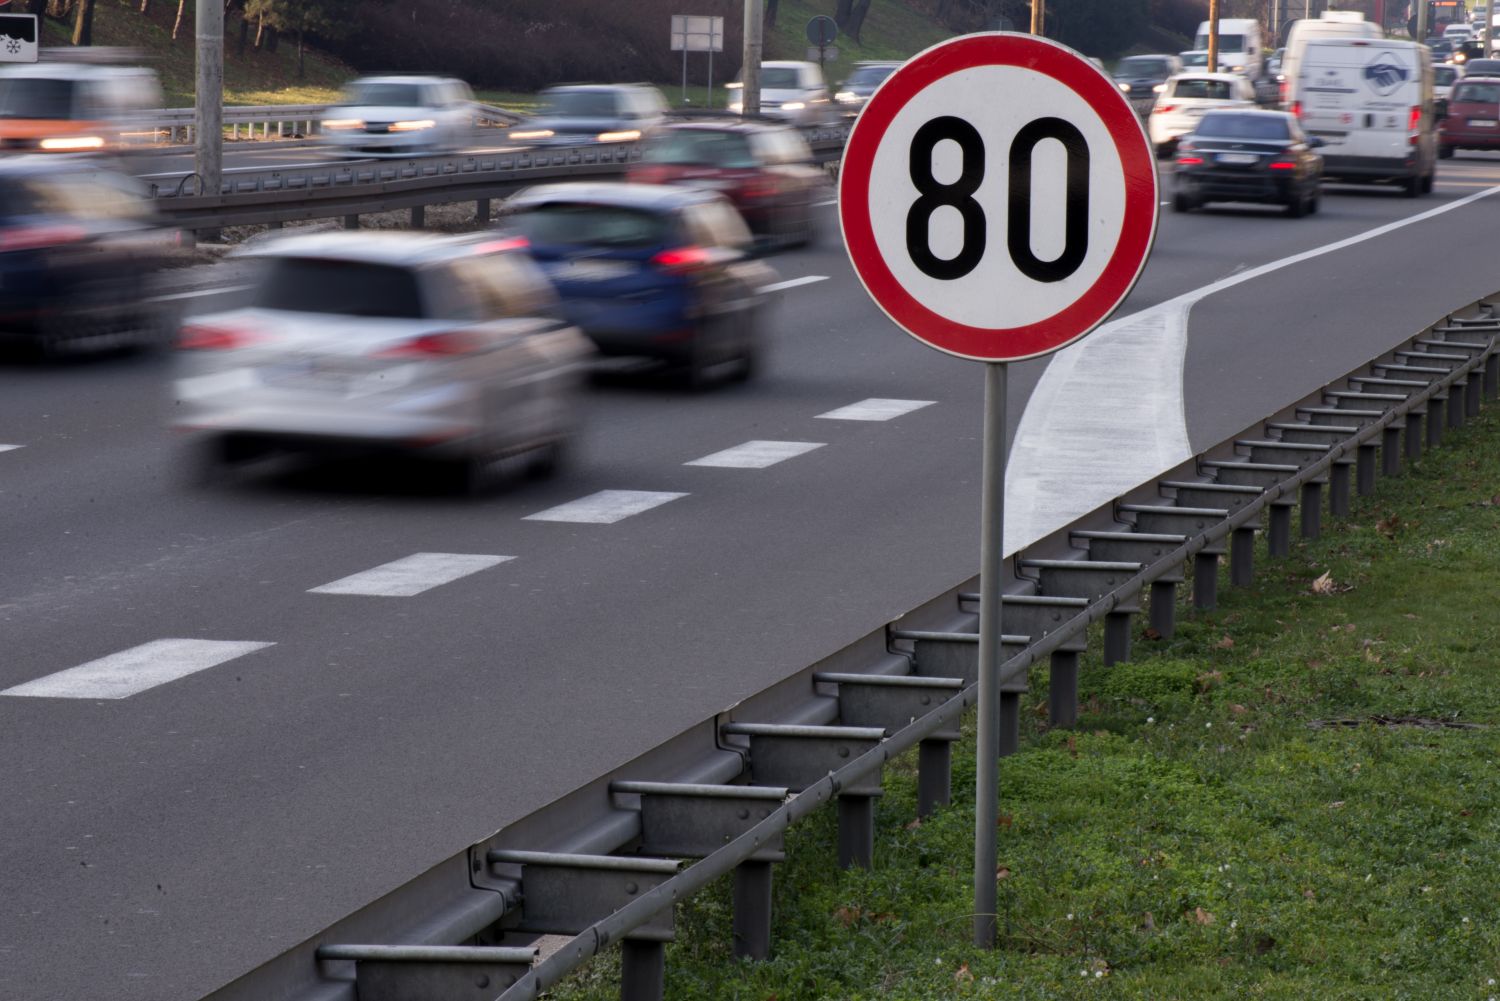 Aucun tué sur les routes de Moselle pendant les vacances d'hiver malgré les excès de vitesse records 